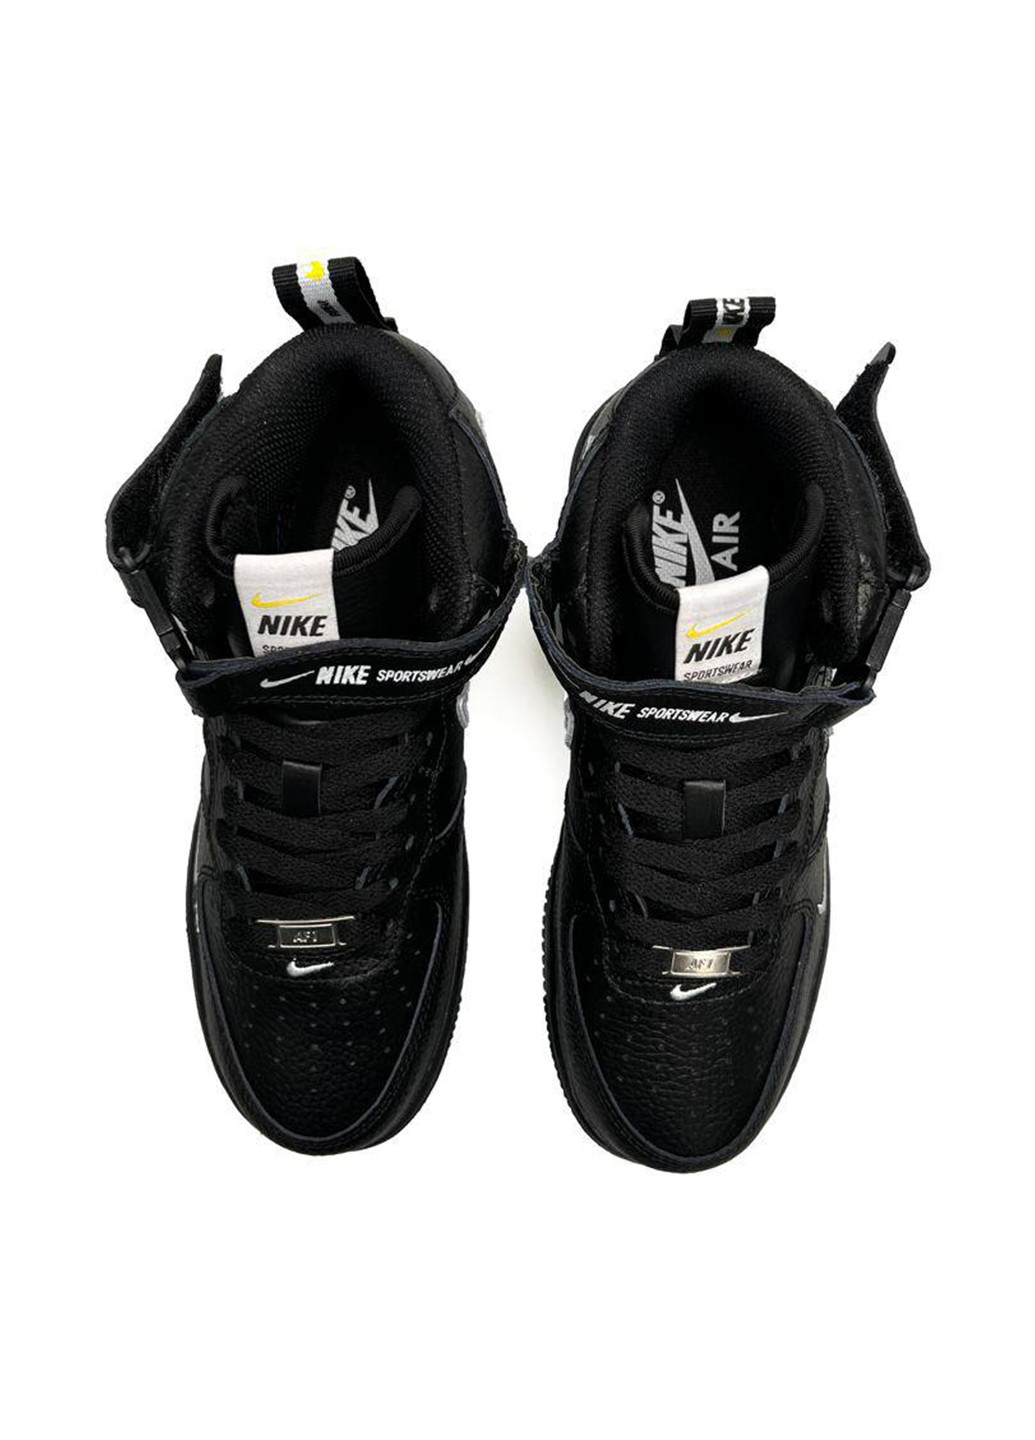 Черные всесезонные кроссовки Nike Air Force Mid Utility All Black